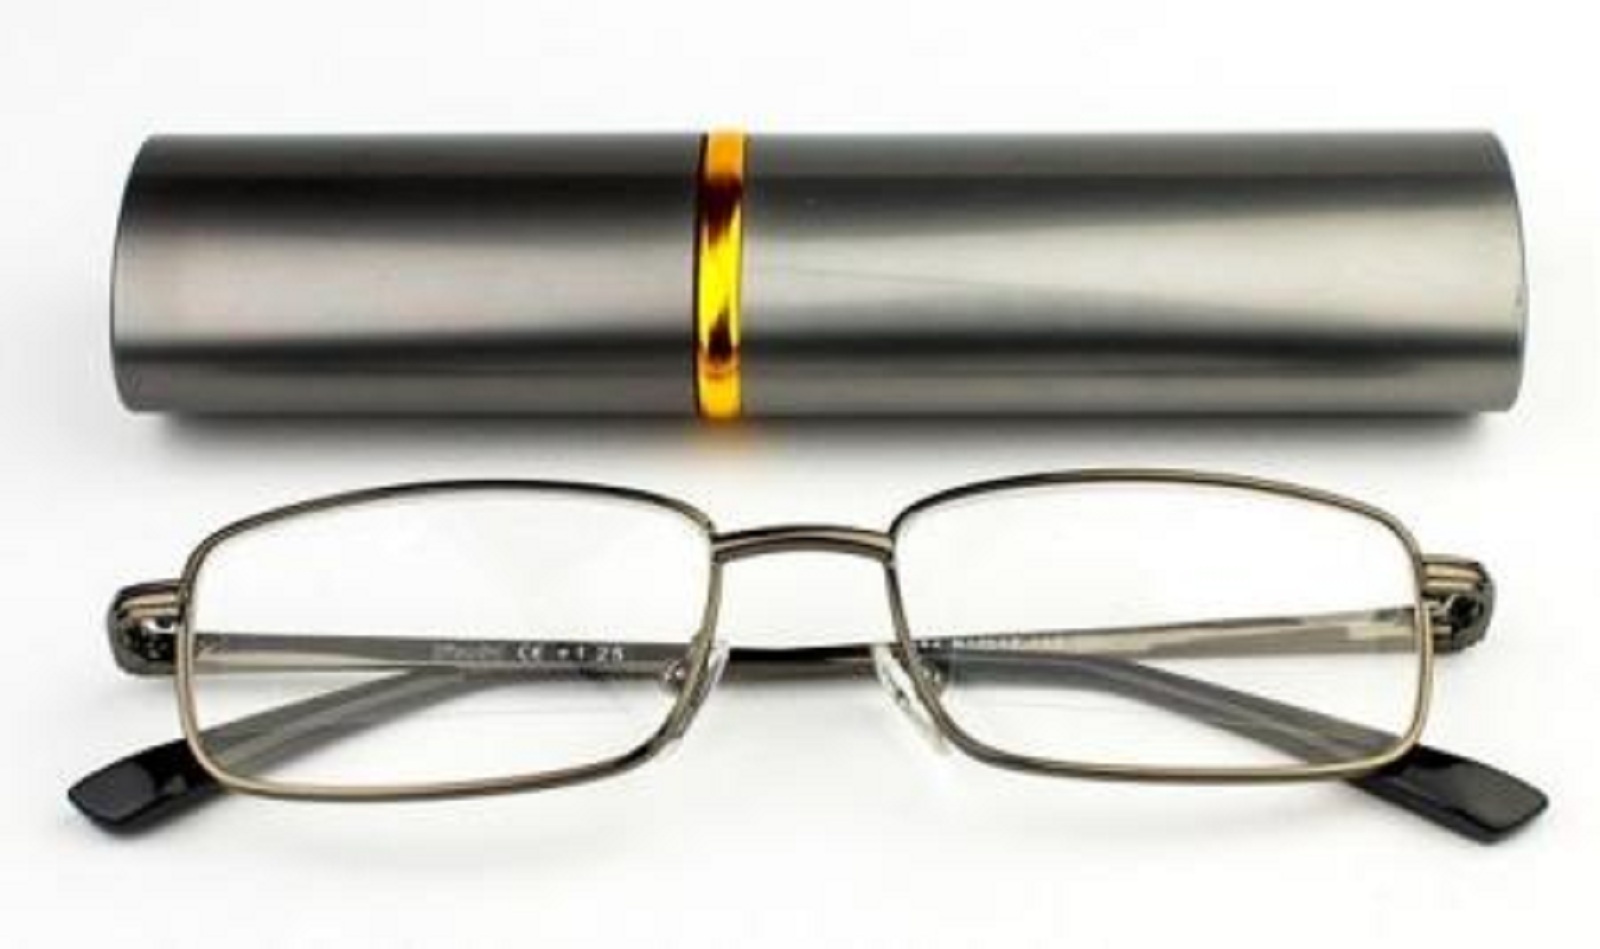 Очки 2.5 мужские. Очки для чтения Vizzini. Очки для чтения READLNG Glasses РЦ 62-64 +2,5. Очки для чтения Vizzini 1. Очки для чтения в футляре 199р.